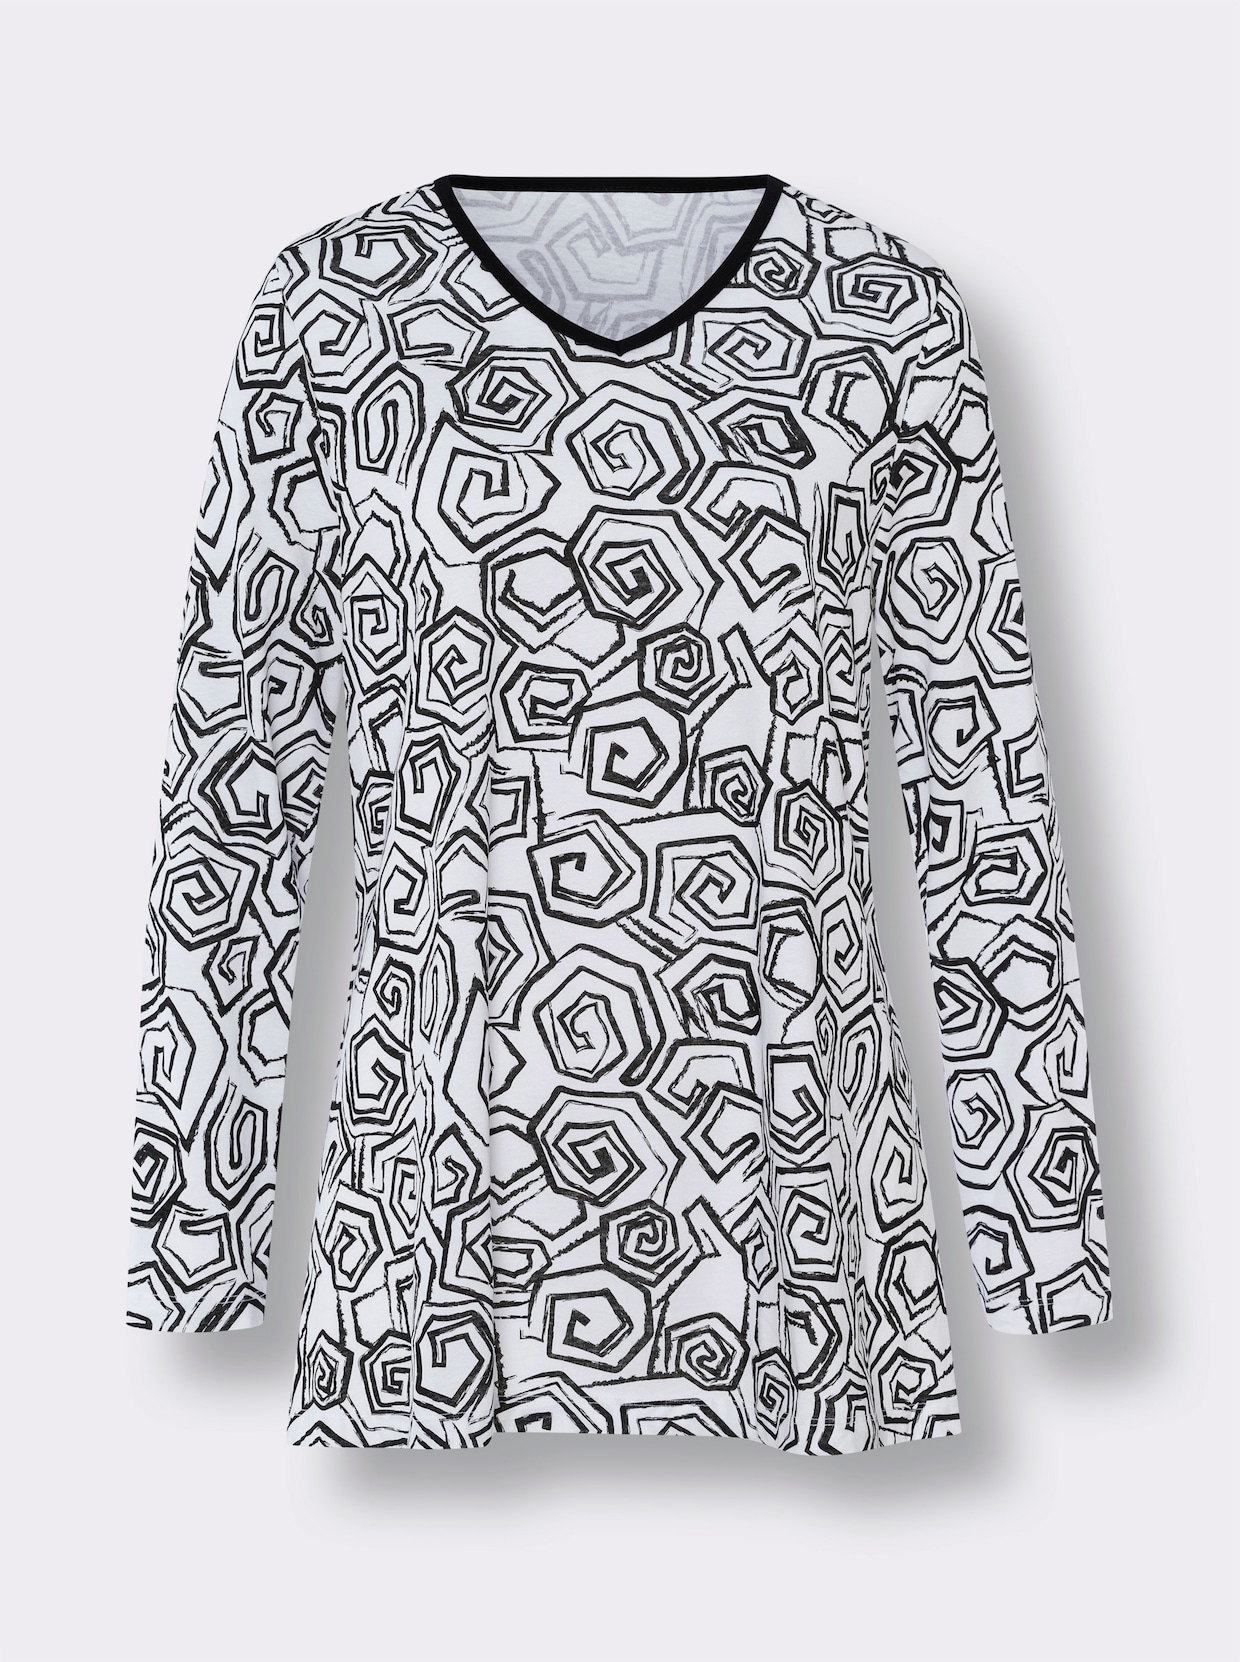 Pyjamas - vit-svart, tryckt